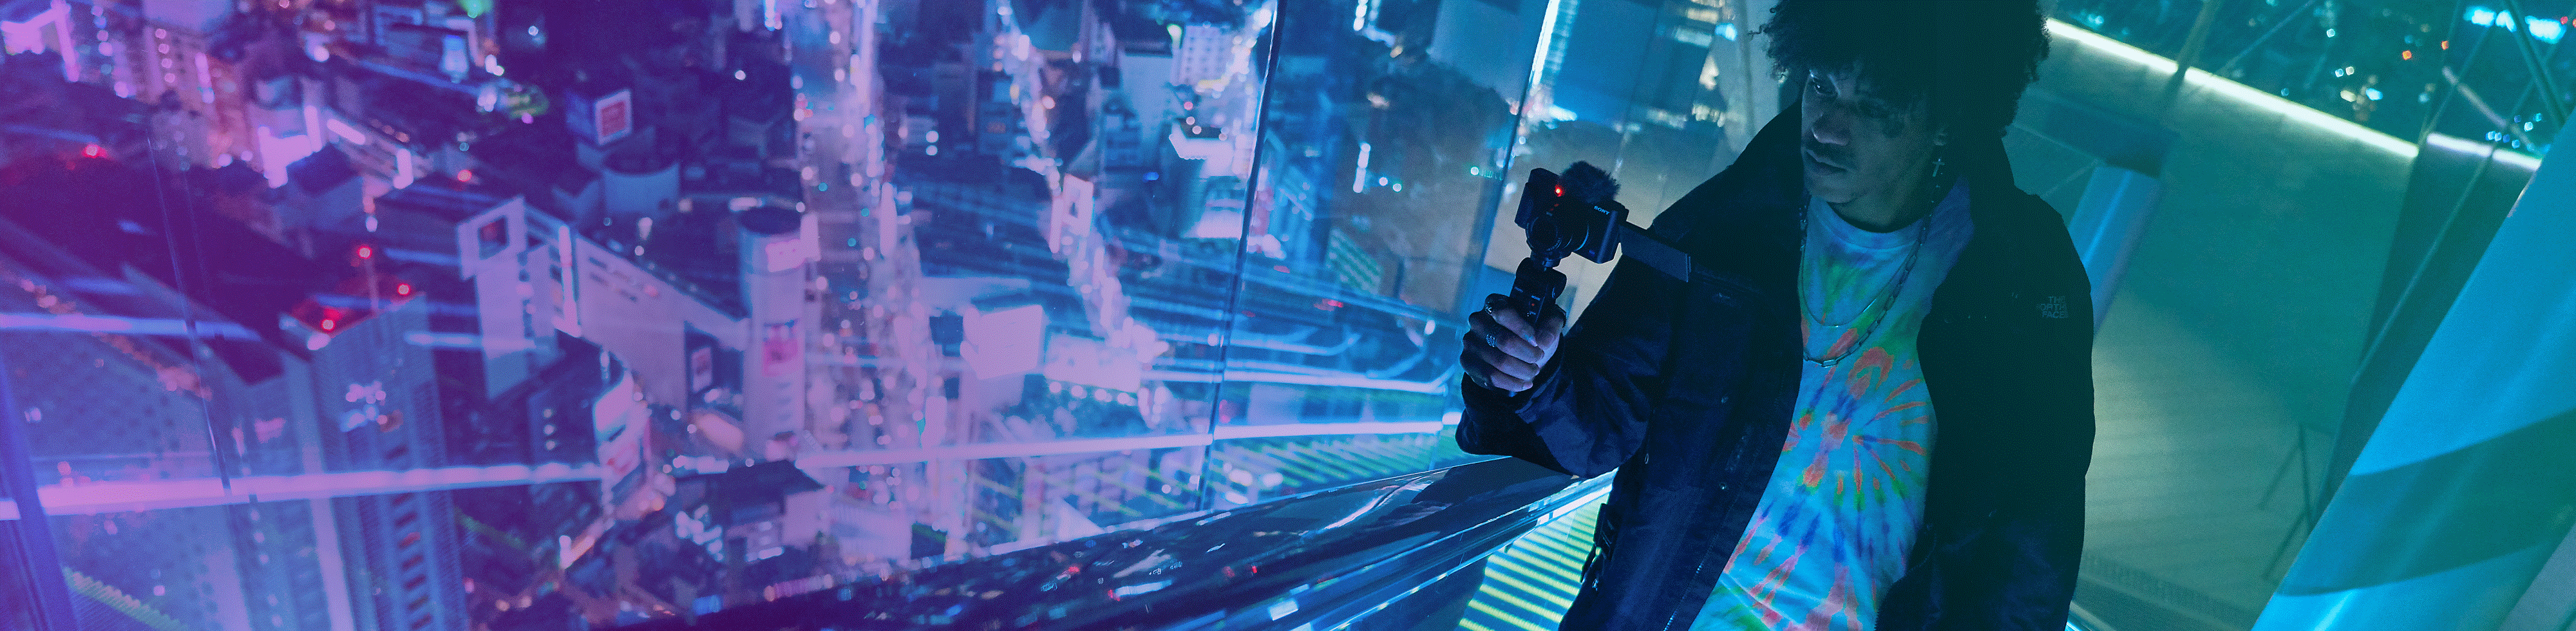 Uomo che gira video di vista notturna in un grattacielo